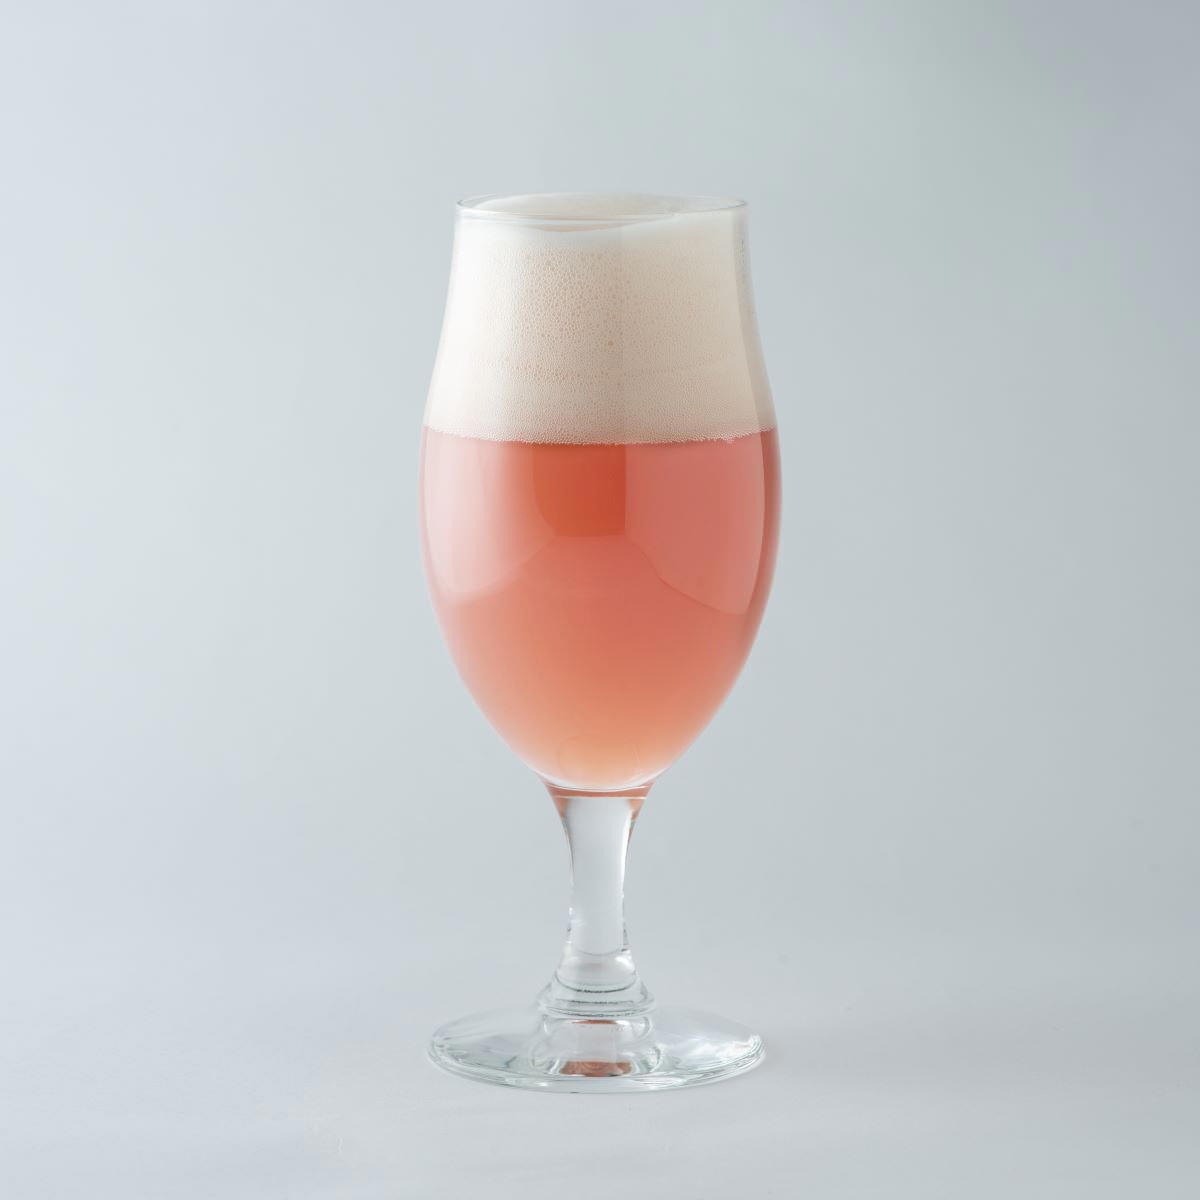 「八ヶ岳ルバーブハウス ルバーブビールヘイジー」は、珍しいほのかなピンク色が特徴の、芳酵な旨みが感じられるビールです。どんな料理にも相性がよく、カクテル感覚でお飲みいただけます。小麦麦芽を使用したヴァイツェンタイプで、きめ細かい泡を長く楽し...